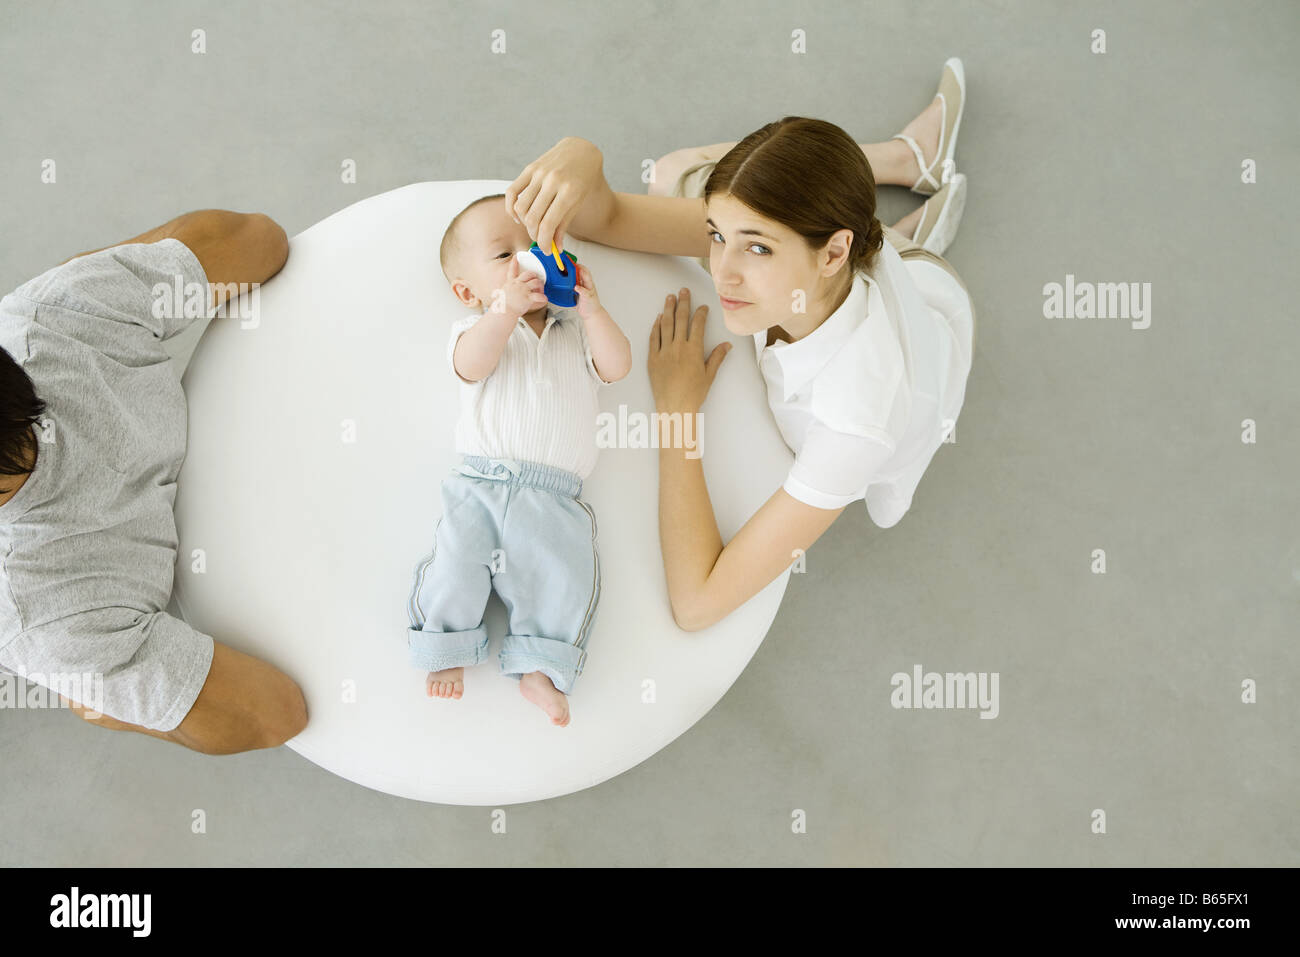 Mère jouer avec bébé couché sur un pouf, père assis avec dos tourné à eux, overhead view Banque D'Images